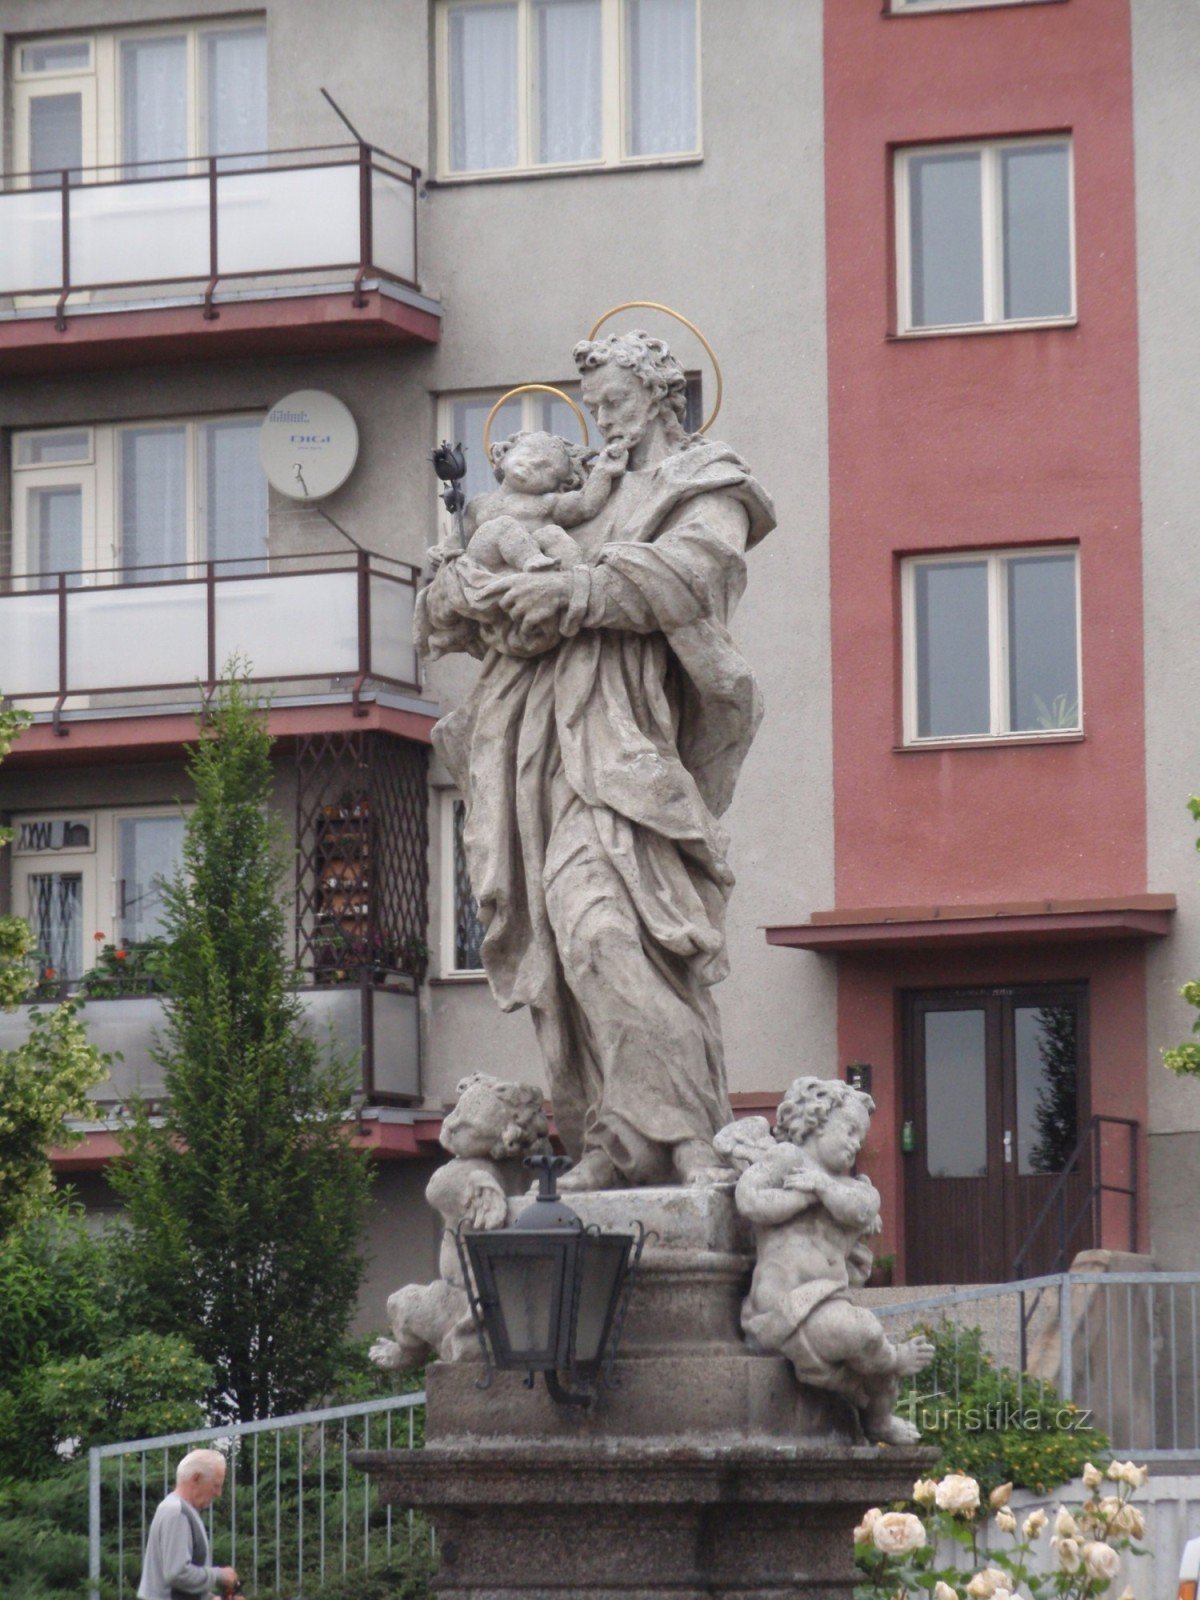 Άγαλμα του Αγ. Ο Joseph with Baby Jesus στο Velké Meziříčí